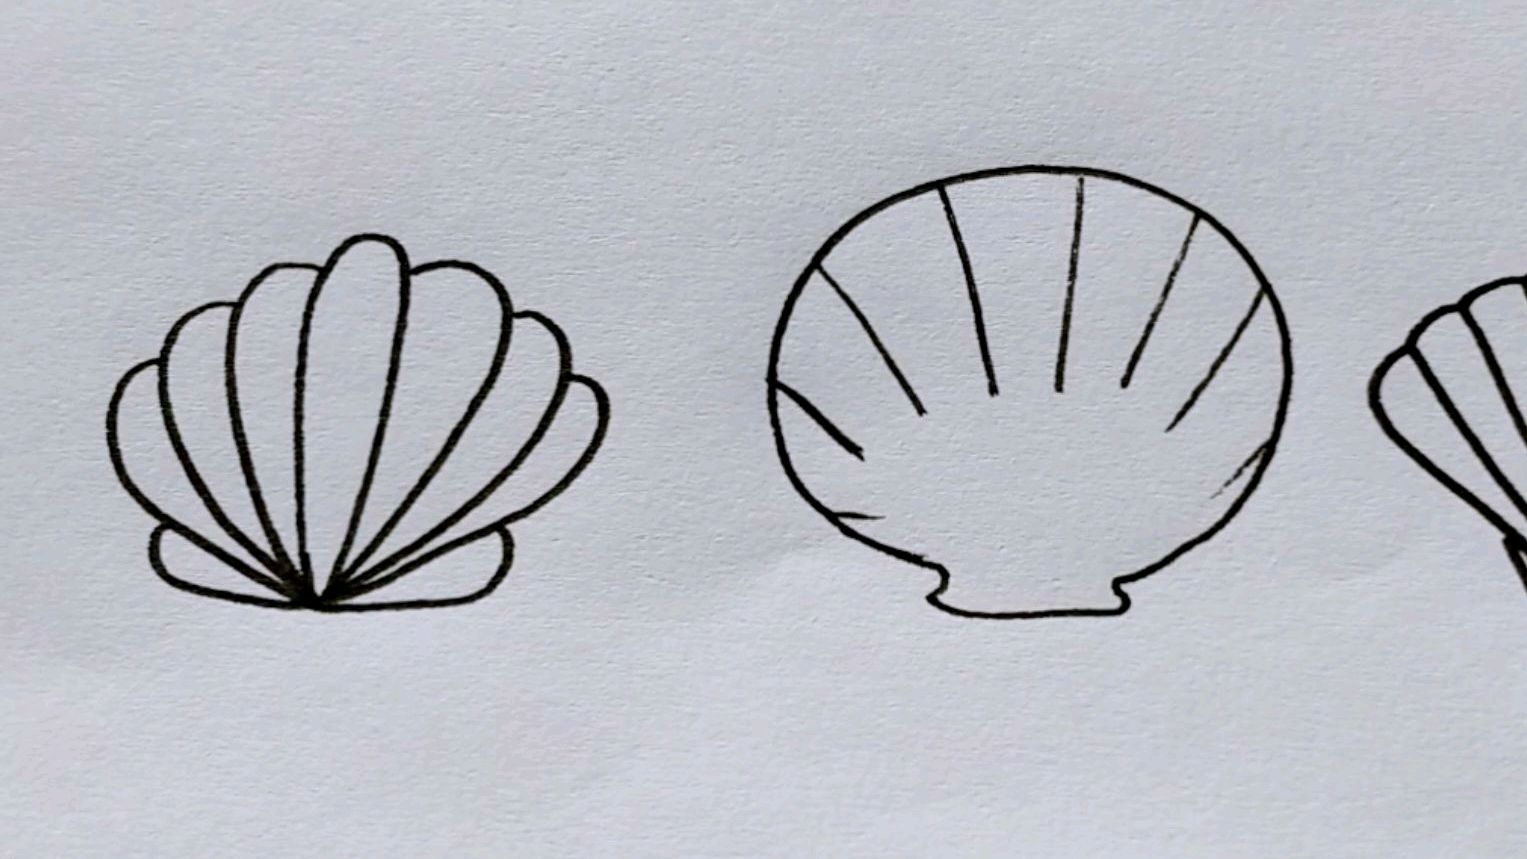 贝壳的画法 简单图片